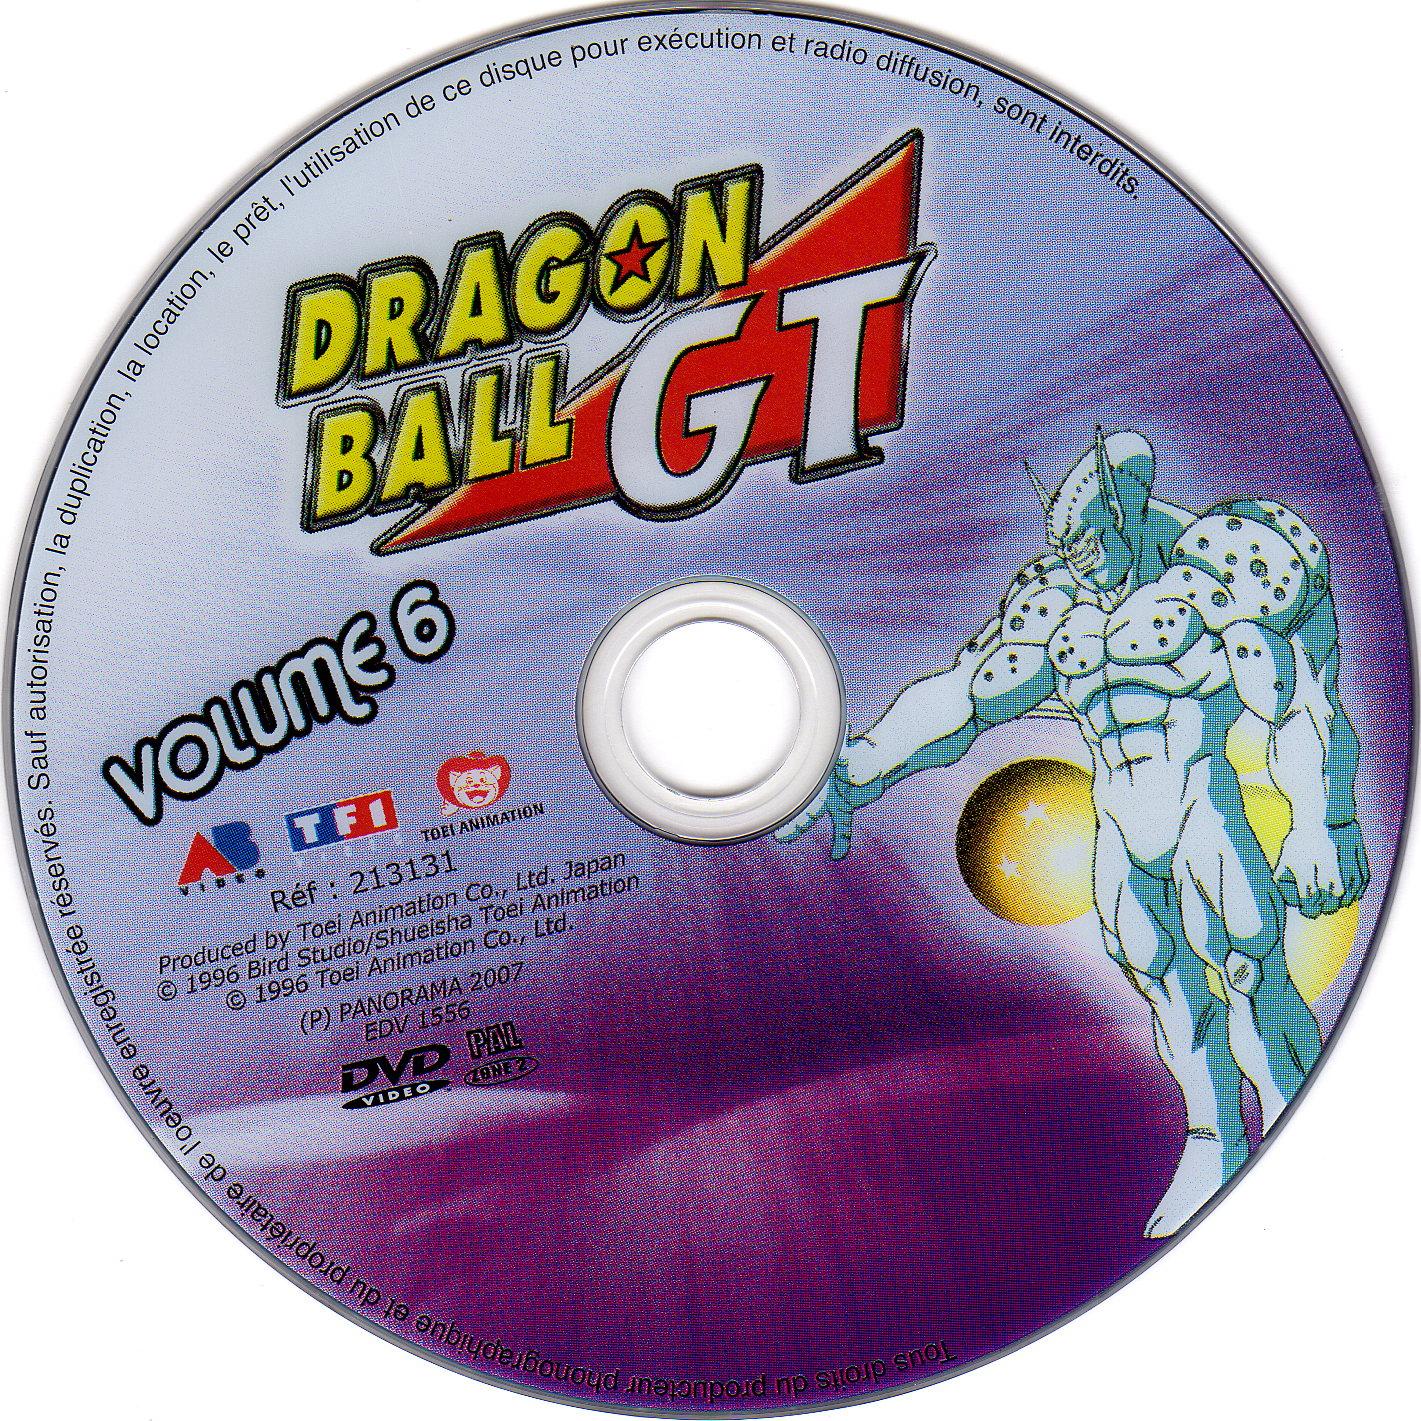 Dragon ball GT vol 06